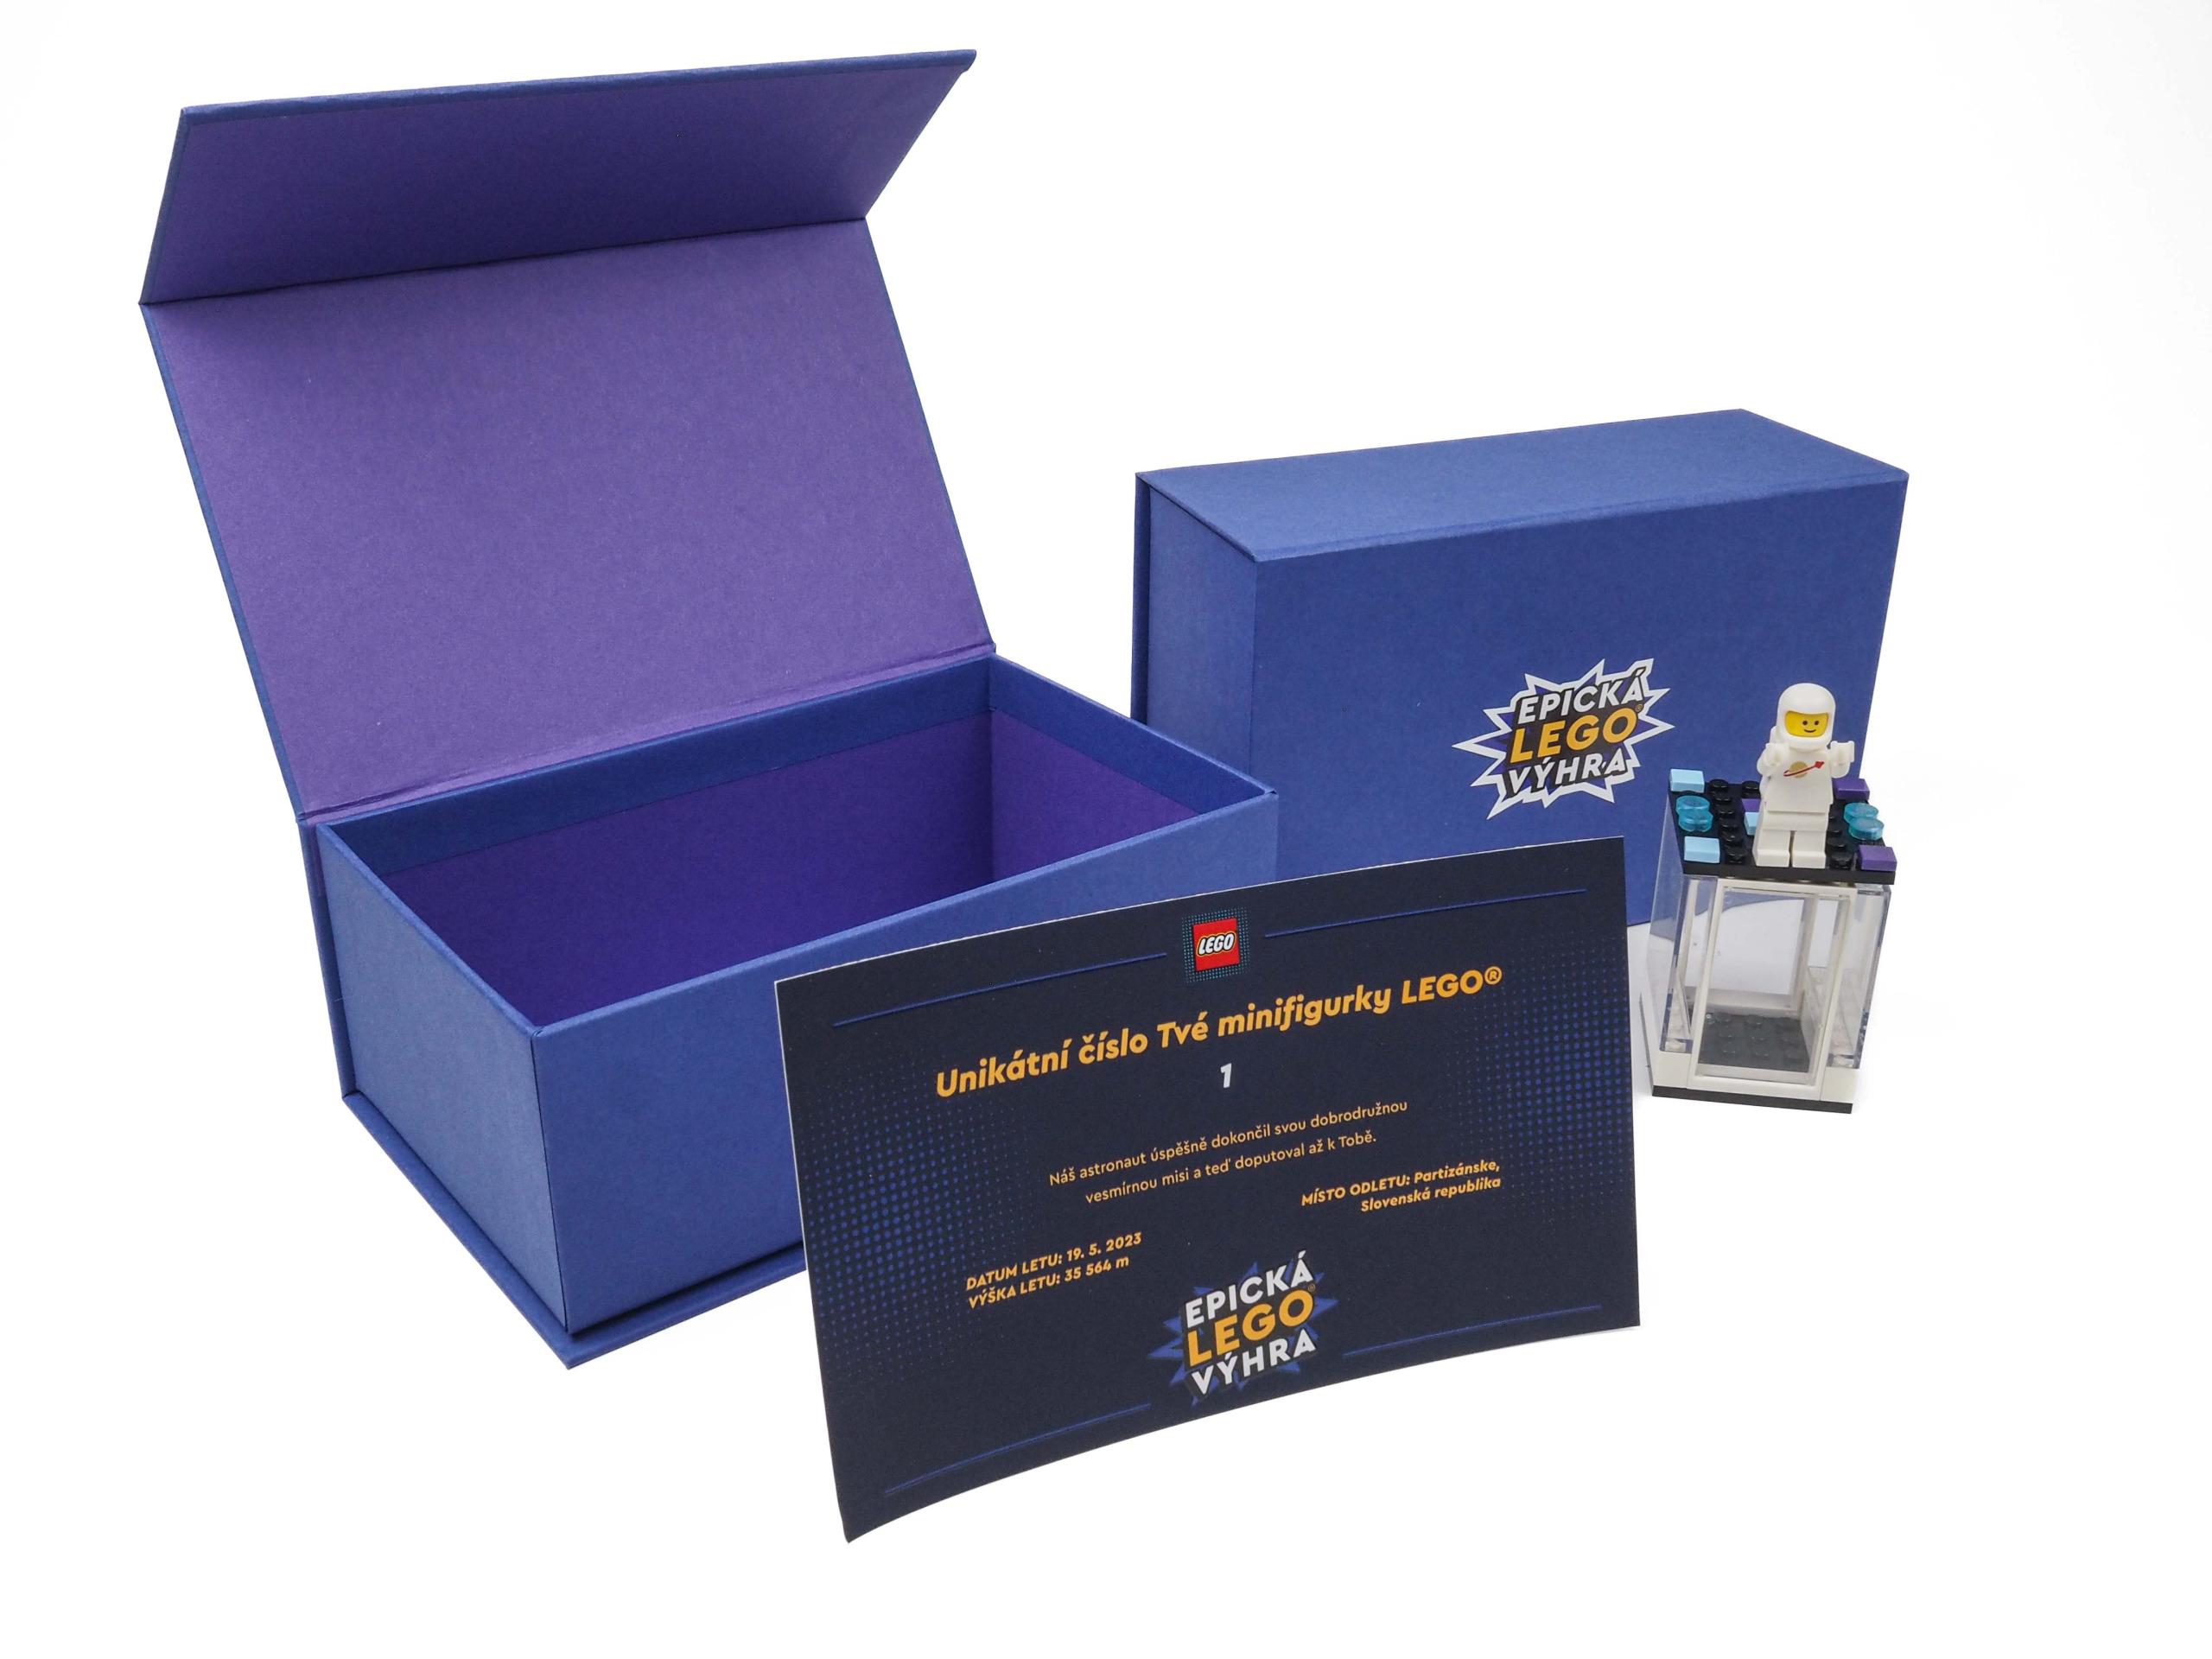 V roce 2023 jsme se stali součástí velkolepé soutěže "Epická LEGO výhra", při které bylo 1000 LEGO kosmonautů vysláno do vesmíru a soutěžící tak mohli vyhrát jednoho z nich! Jsme velmi rádi, že jsme mohli být dodavateli dárkových krabiček v tomto krásném projektu. Krabičky byly vyrobeny z pevné knihařské lepenky a potahované zvolenými materiály. Uvnitř každé krabičky byla vložena vyřezávaná pěna, na kterou bylo LEGO uloženo.